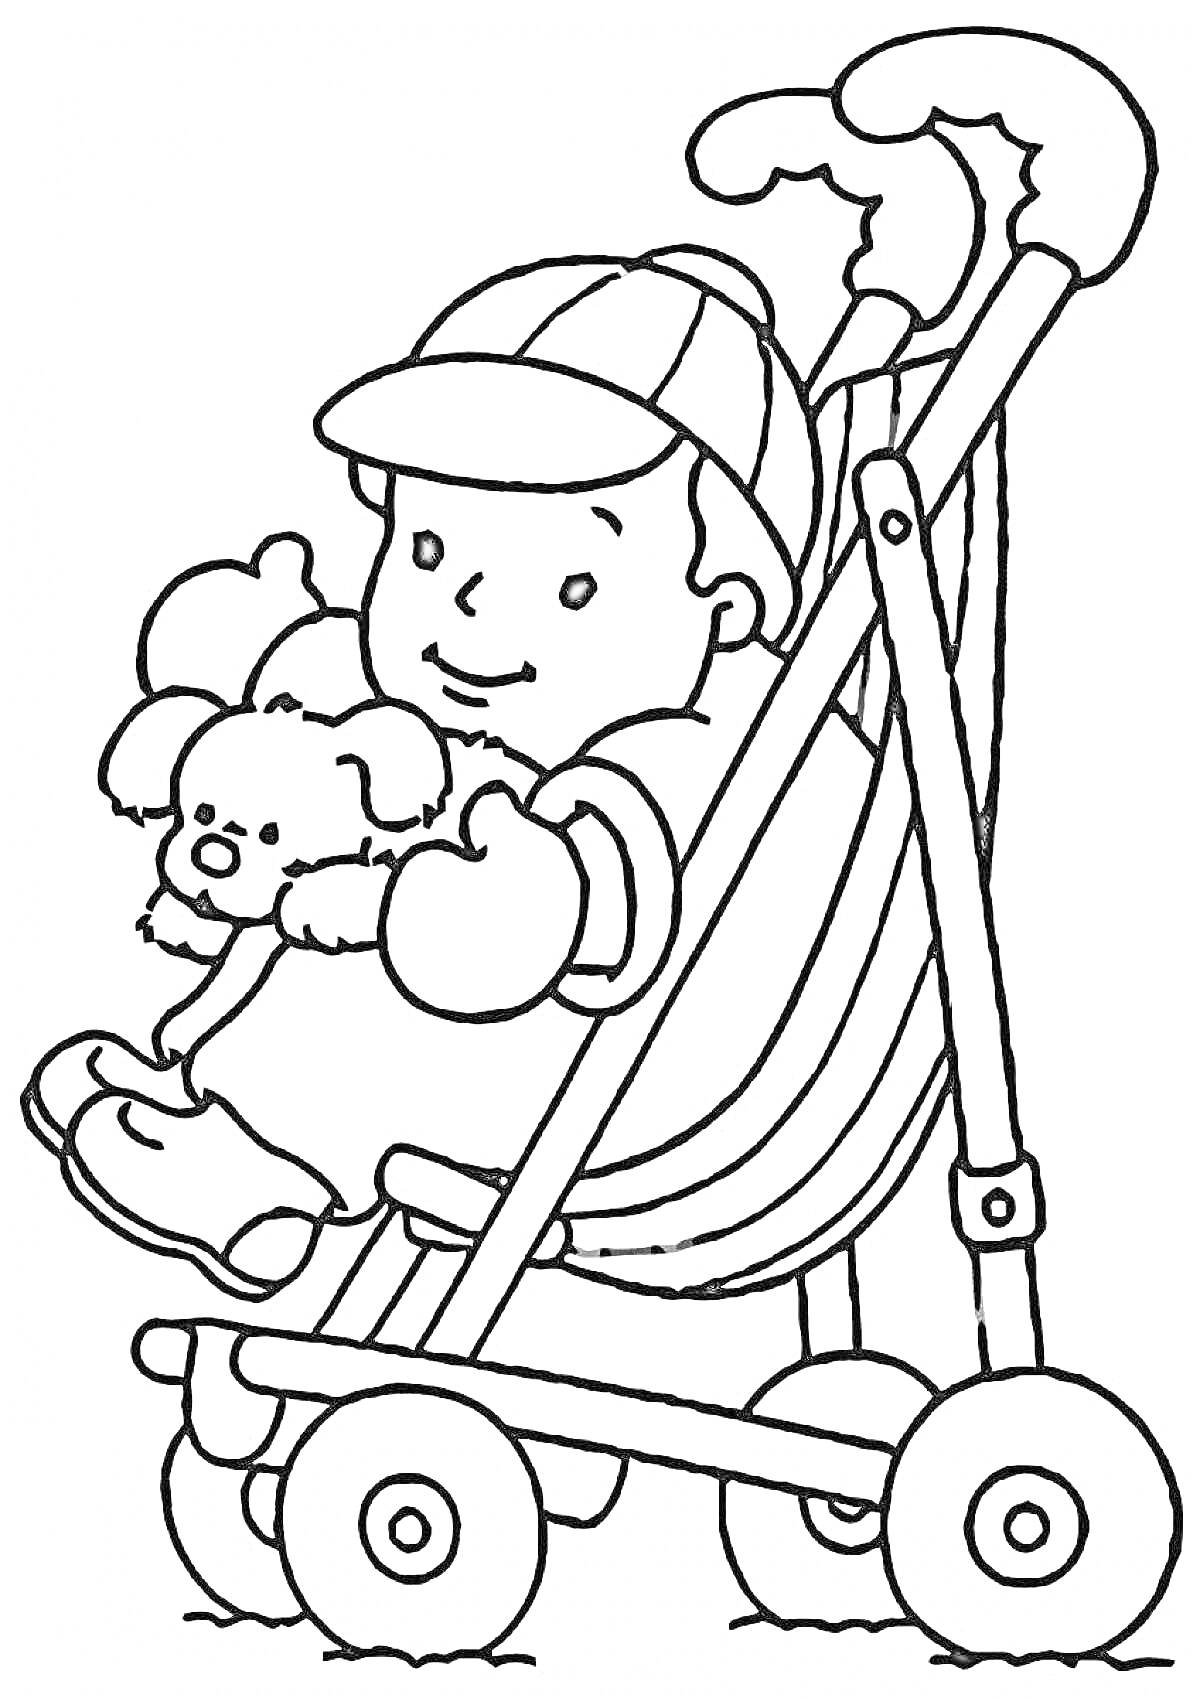 Раскраска Мальчик в коляске, держащий игрушечного щенка